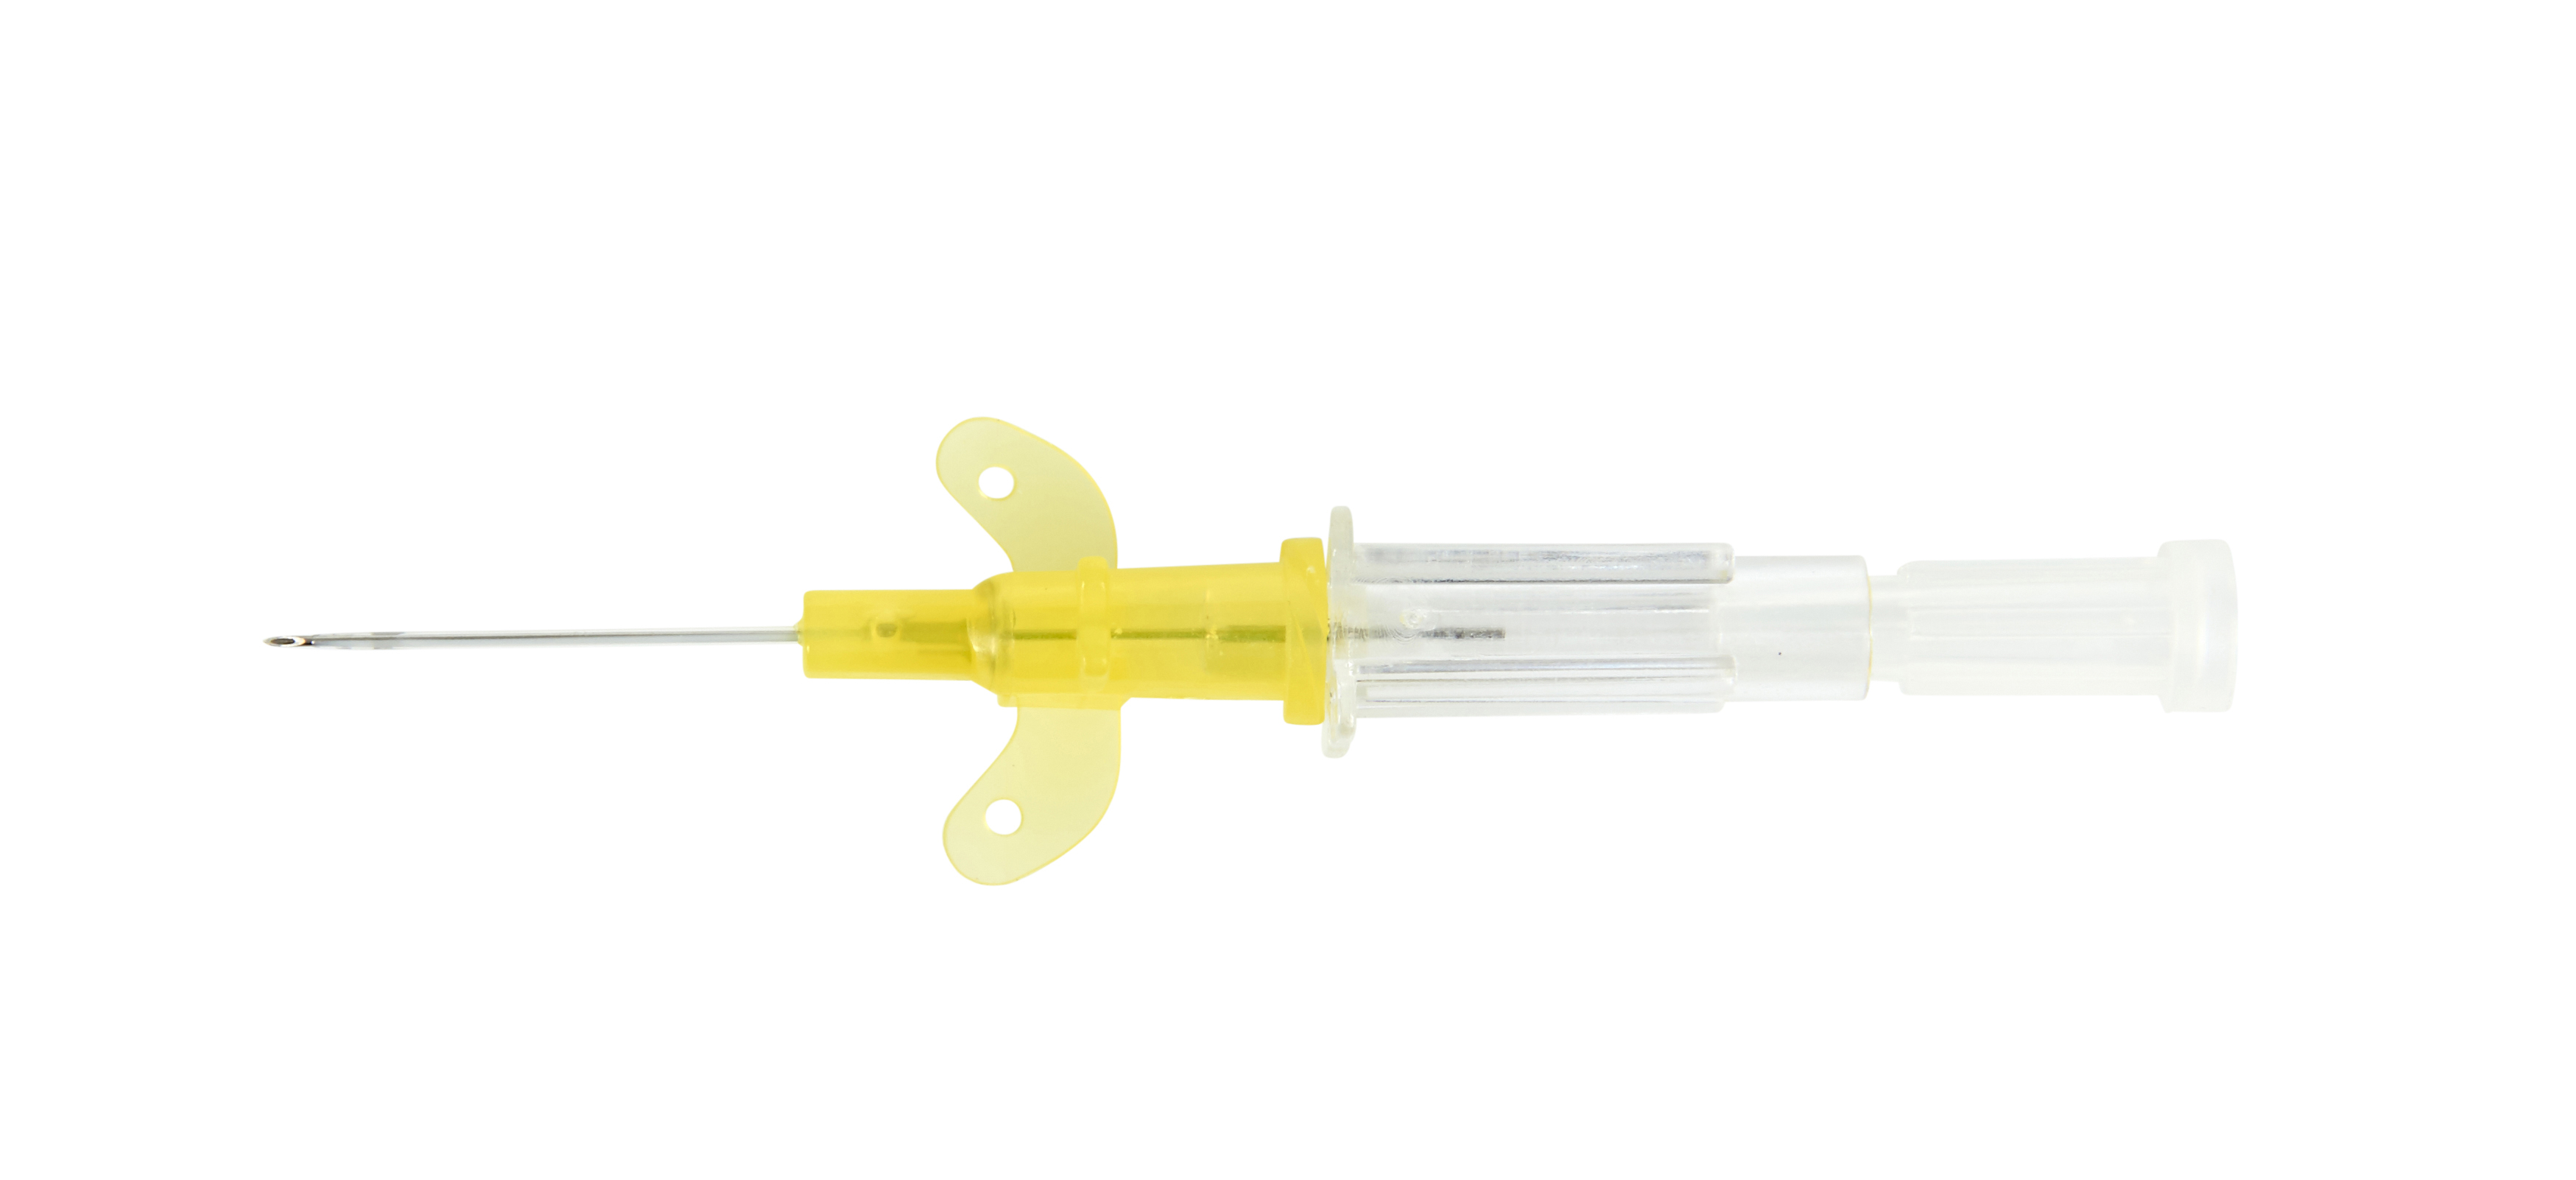 KRUUSE Venocan Mini IV Catheter, 0.7 x 19 mm, 24G x,3/4, 50/pk